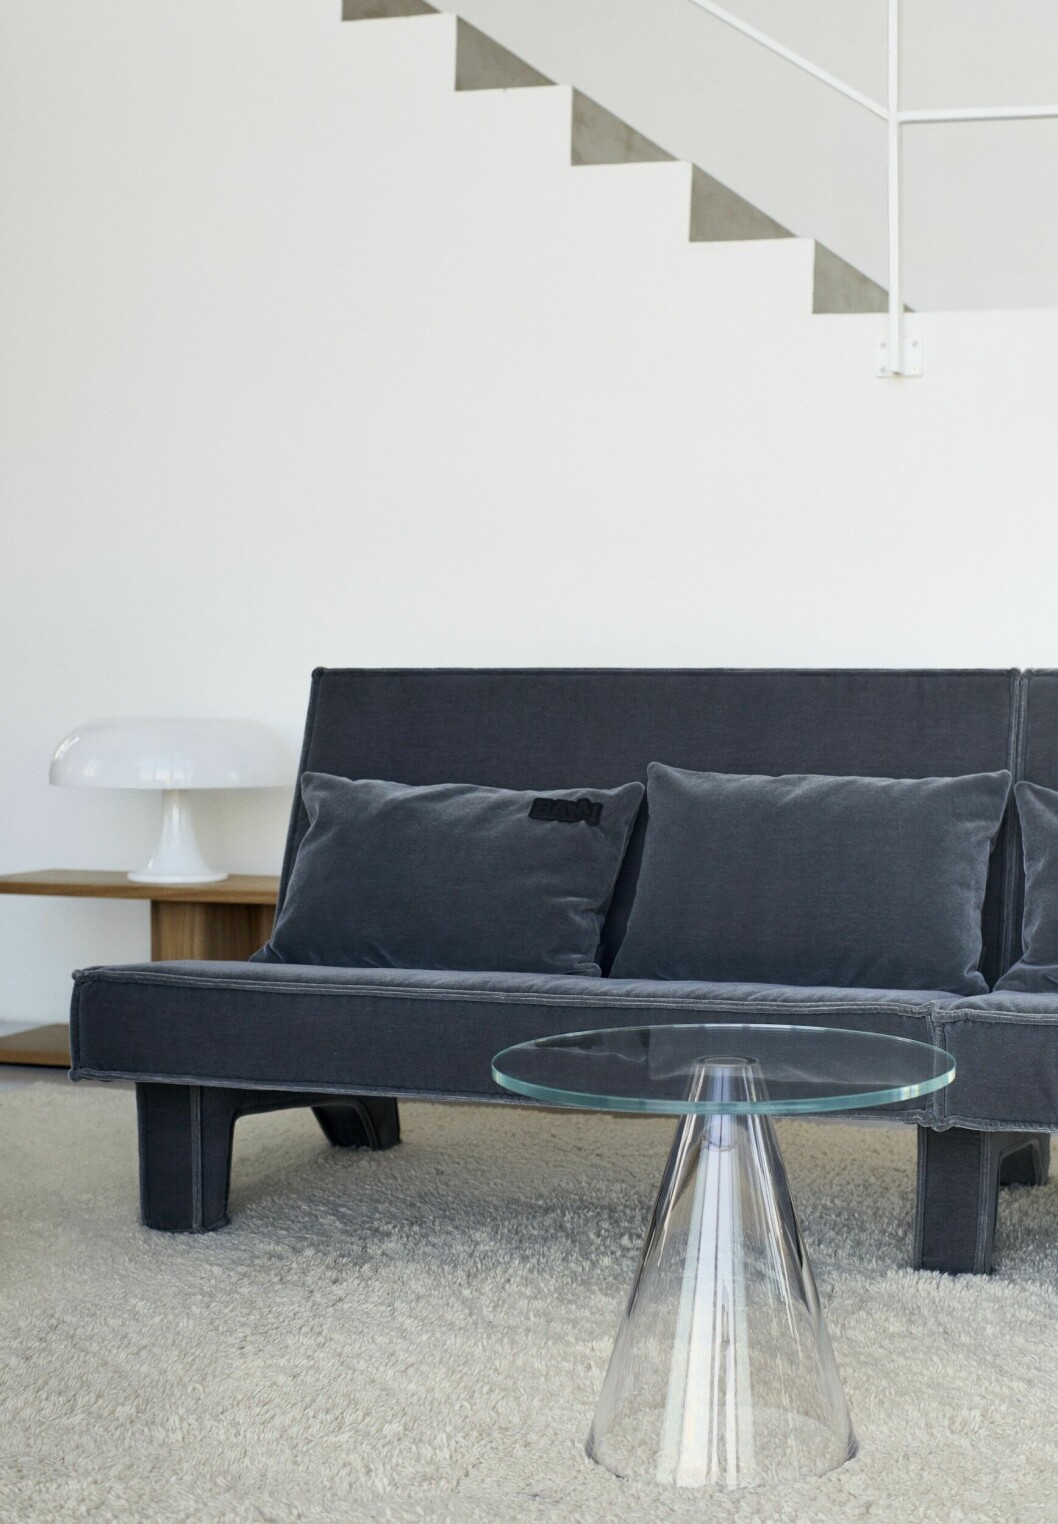 Lekfull i sin enkelhet, soffan Bam! finns i olika storlekar och färger, från 29 000:-, Massproductions.